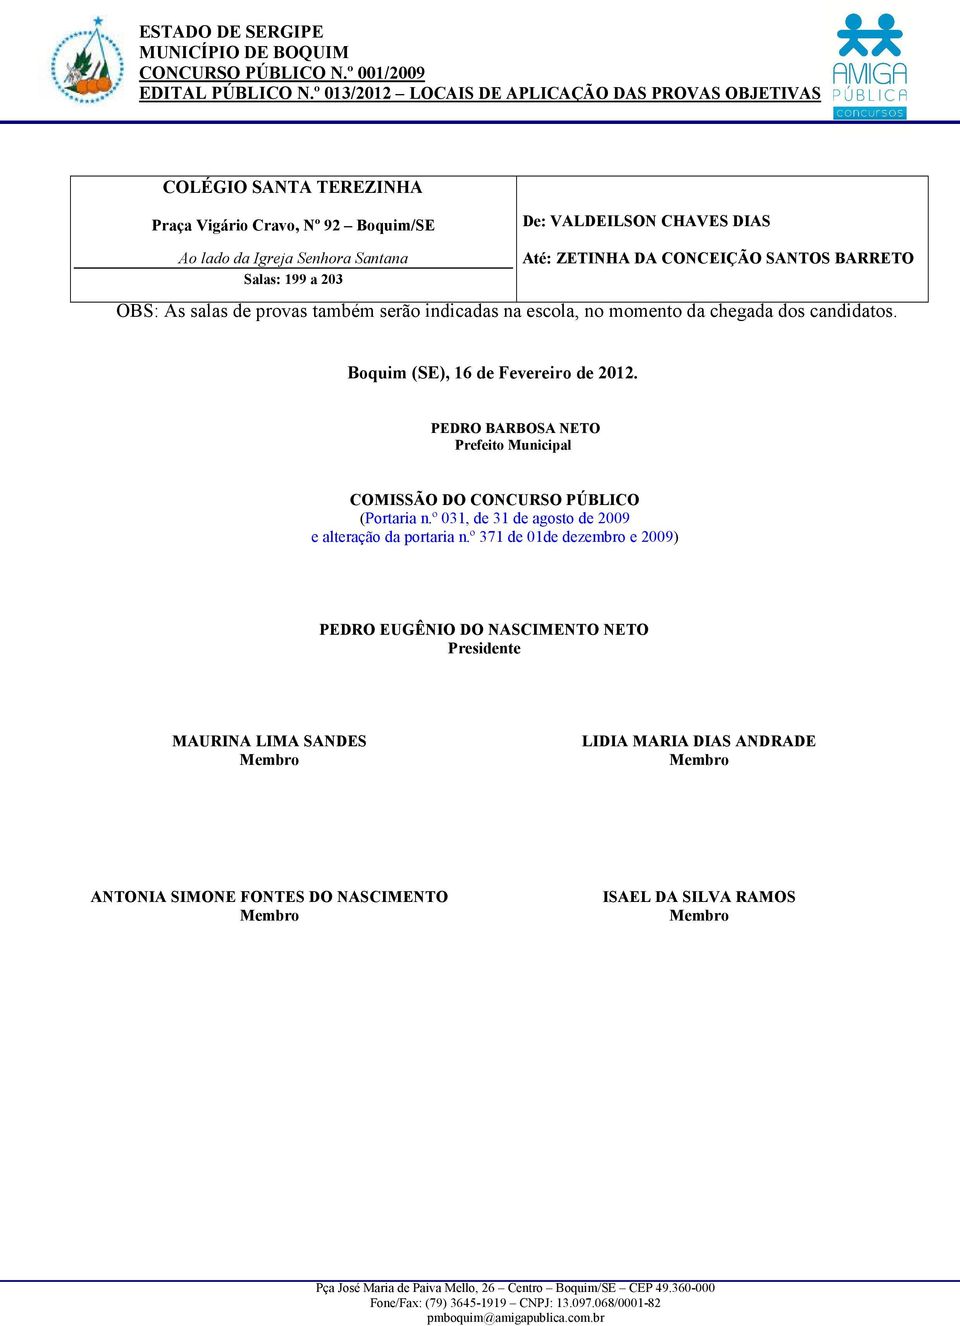 PEDRO BARBOSA NETO Prefeito Municipal COMISSÃO DO CONCURSO PÚBLICO (Portaria n.º 031, de 31 de agosto de 2009 e alteração da portaria n.